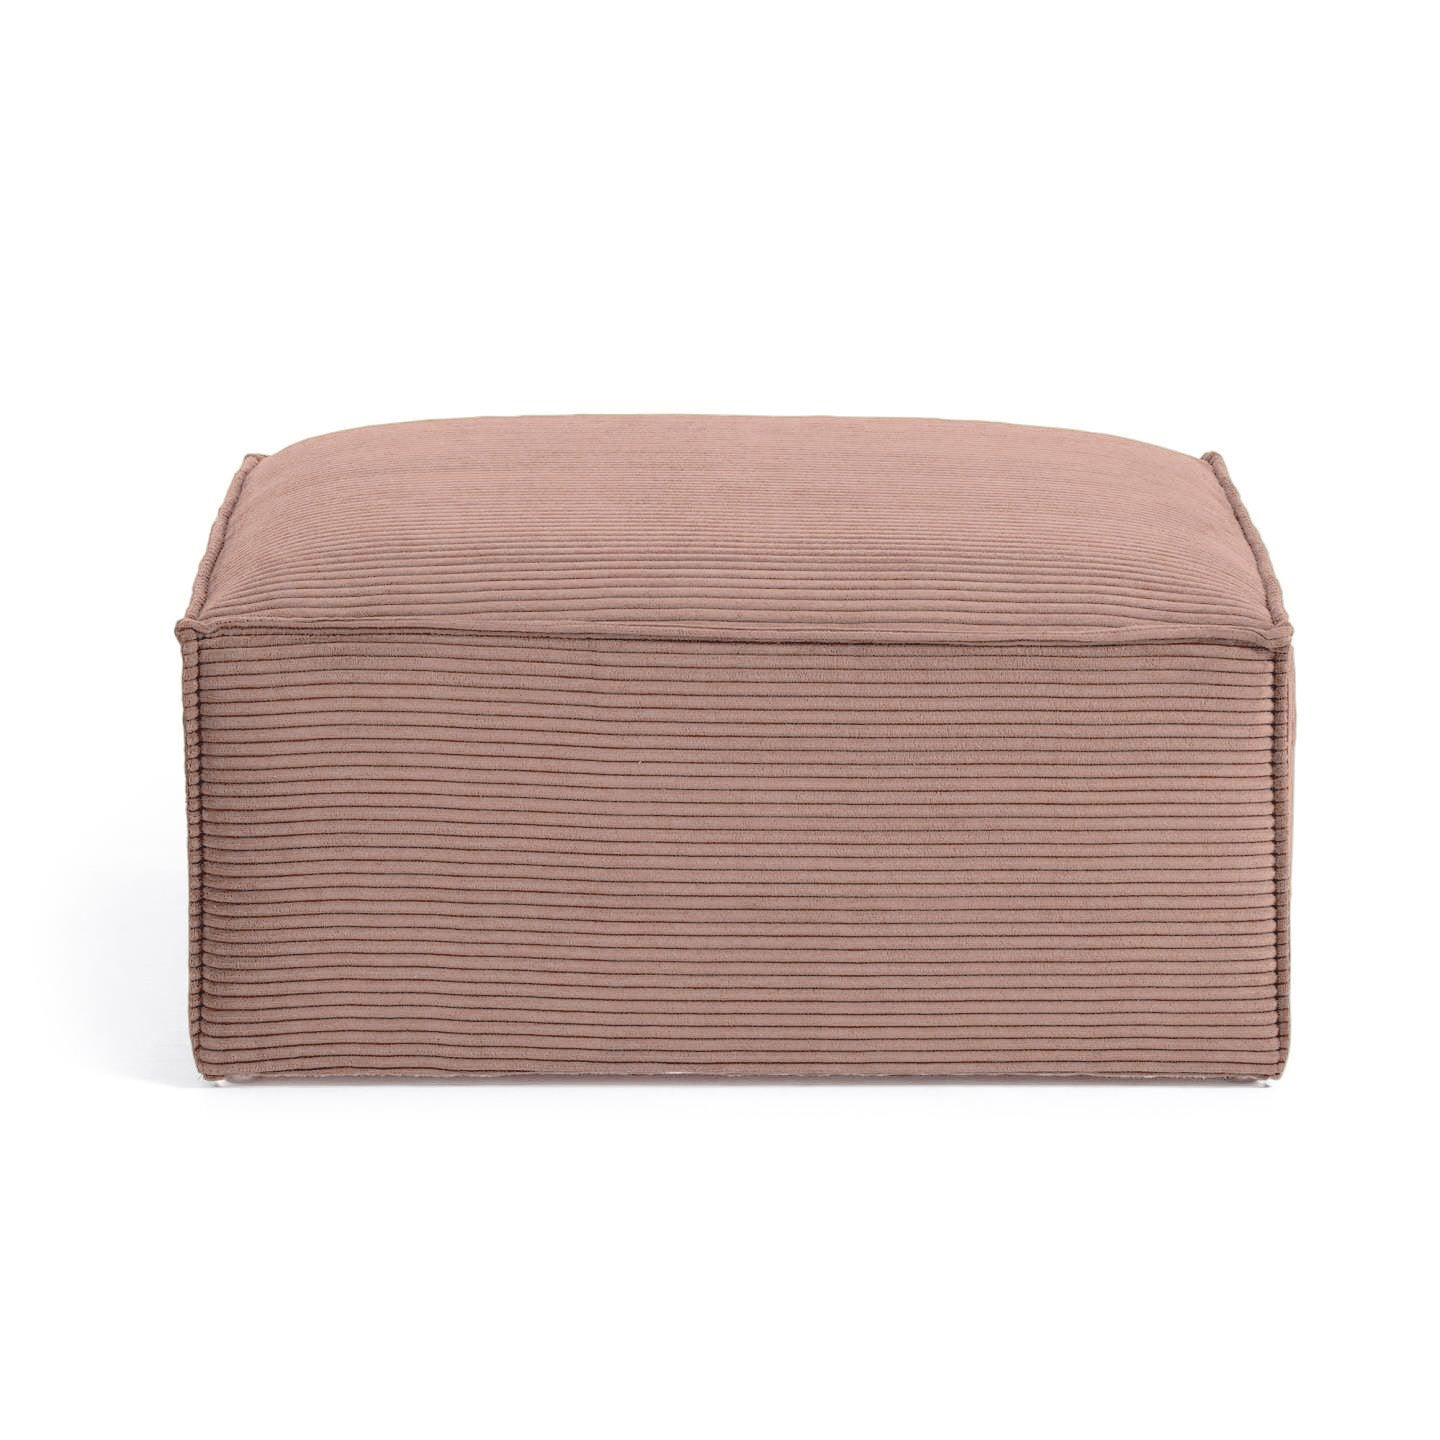 Blok footrest in pink wide seam corduroy, 90 x 70 cm